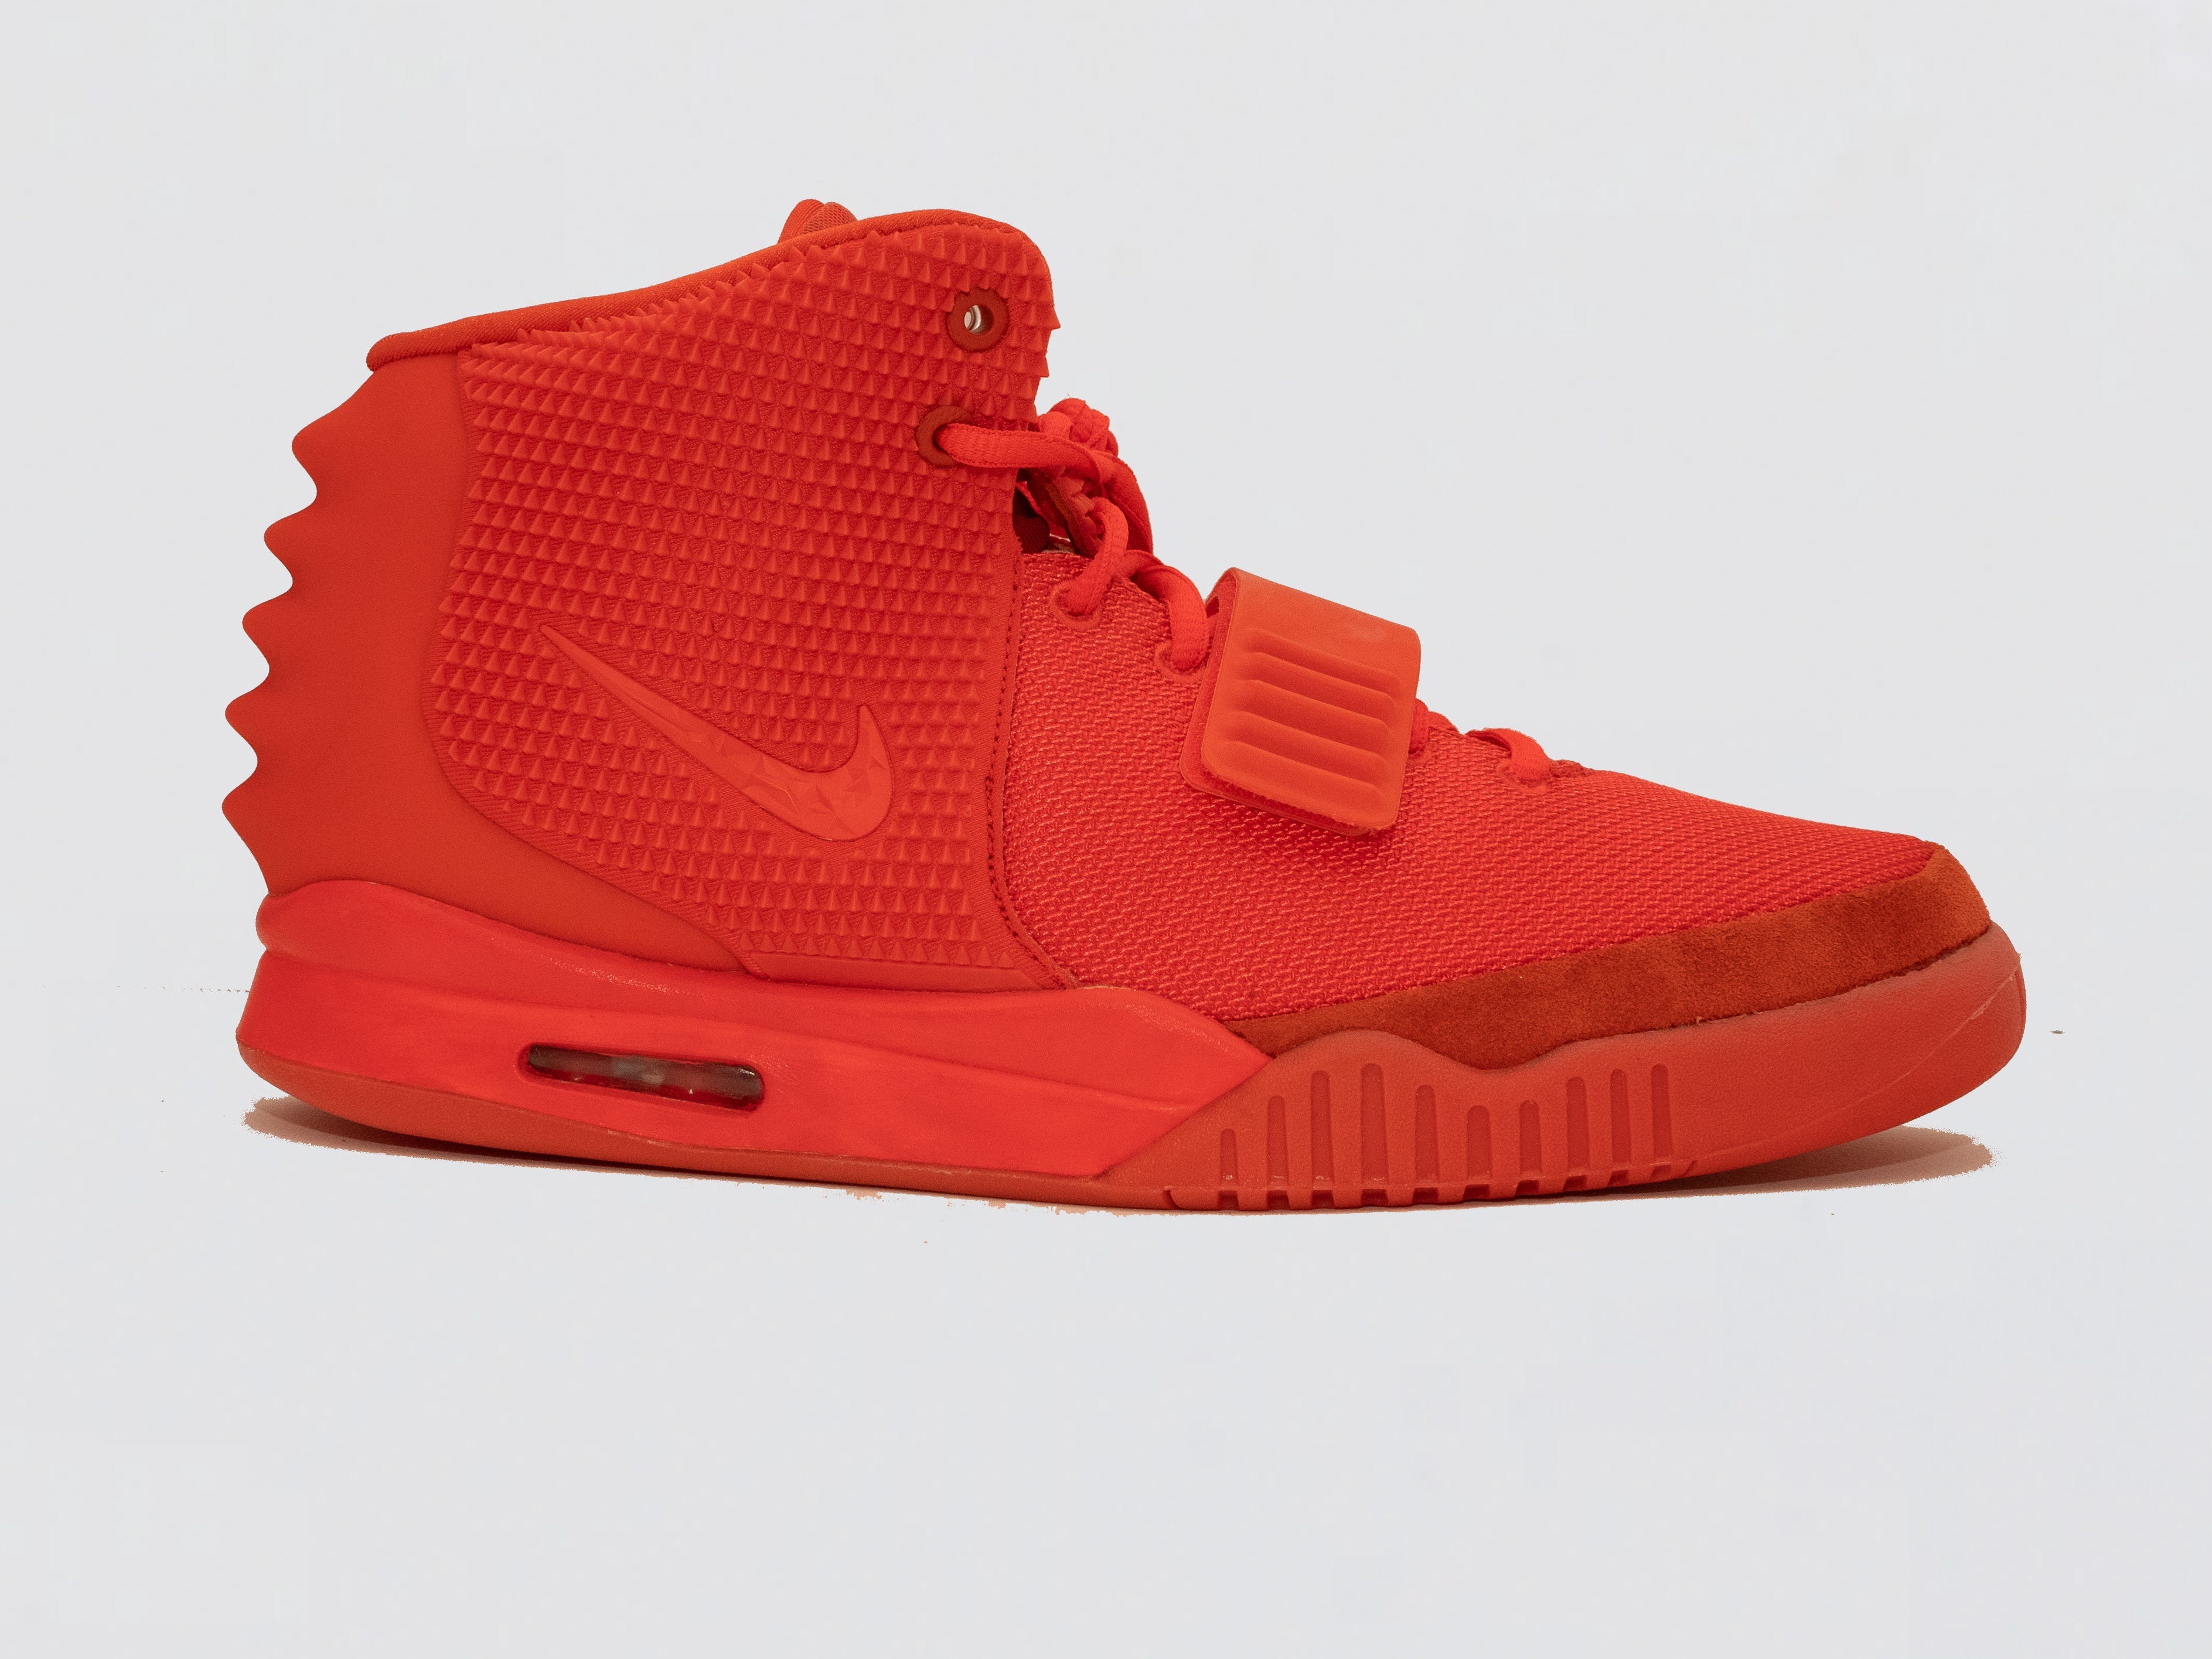 Verkauft wird ein Nike Yeezy Red October von Impossible Kicks